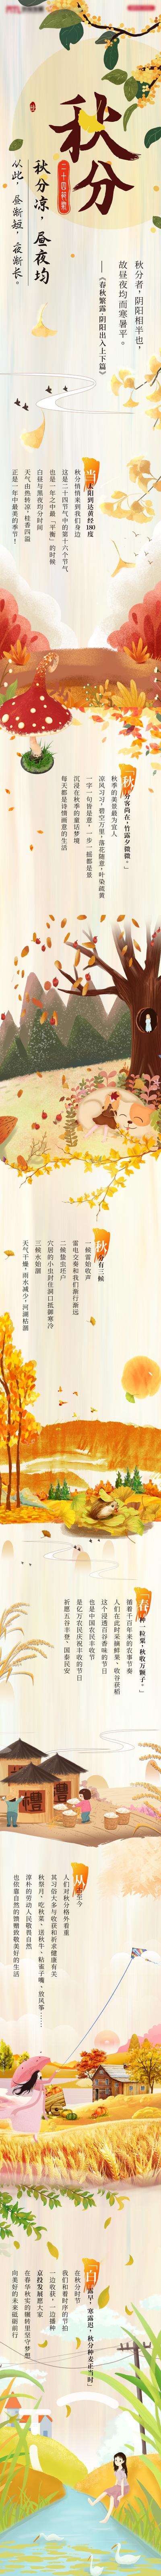 南门网 海报 长图 二十四节气 秋分 插画